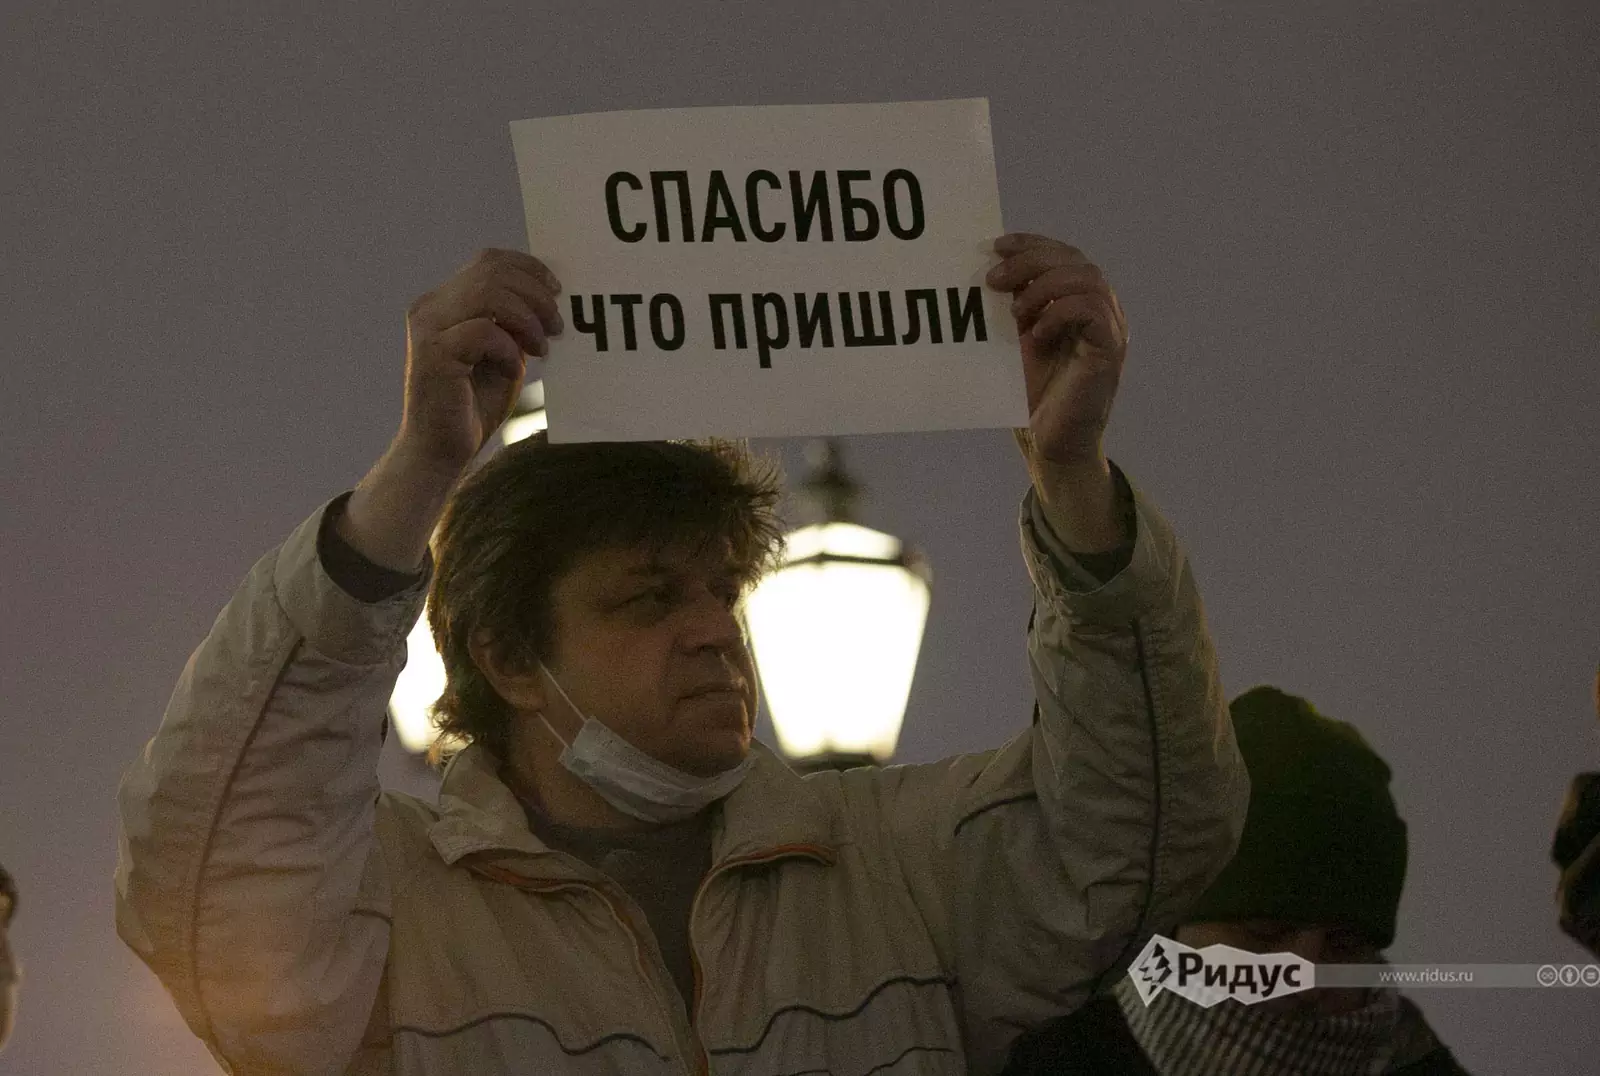 Митинг КПРФ на Пушкинской площади в Москве